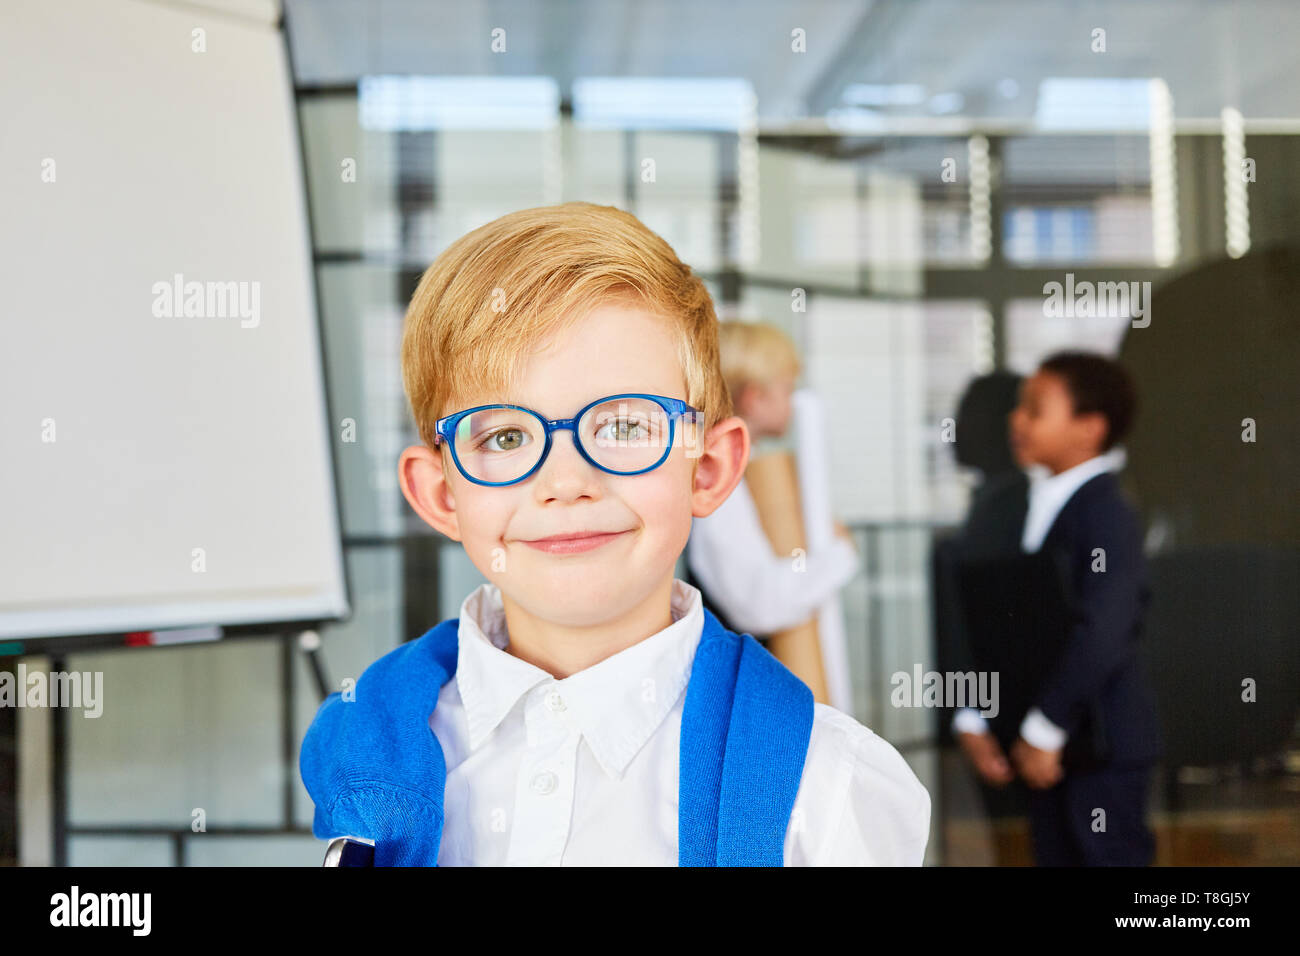 Smiling boy avec des lunettes comme un savant étudiant ou apprenti Banque D'Images